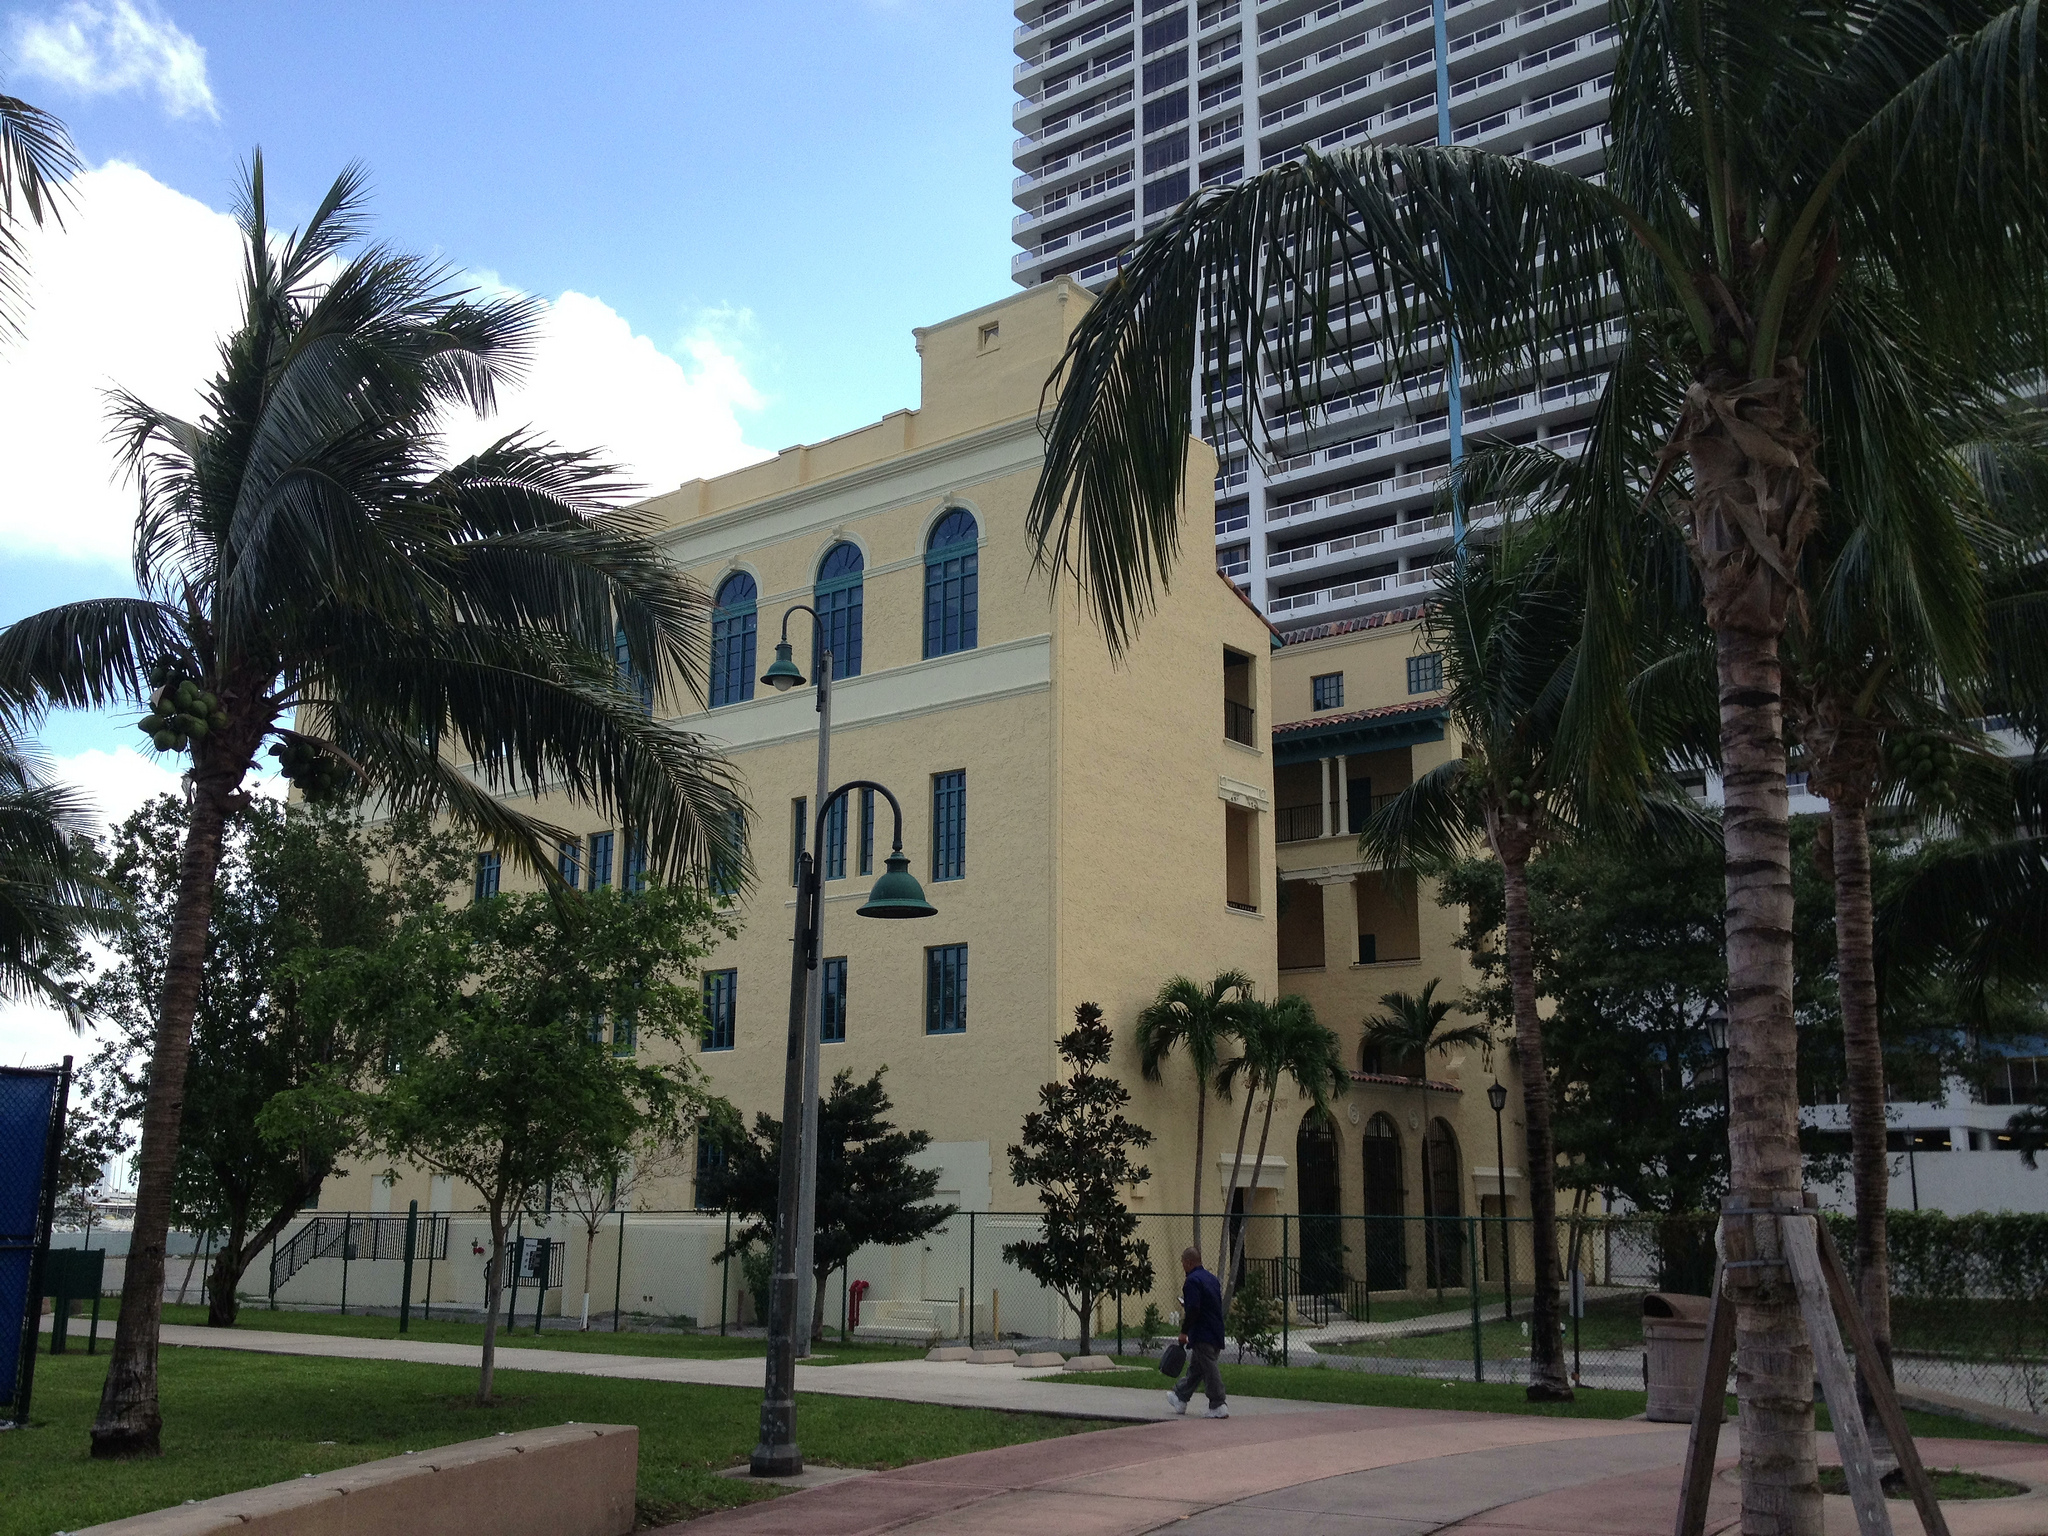 The Miami Woman's Club at 1737 North Bayshore Drive (Credit: Phillip Pessar)